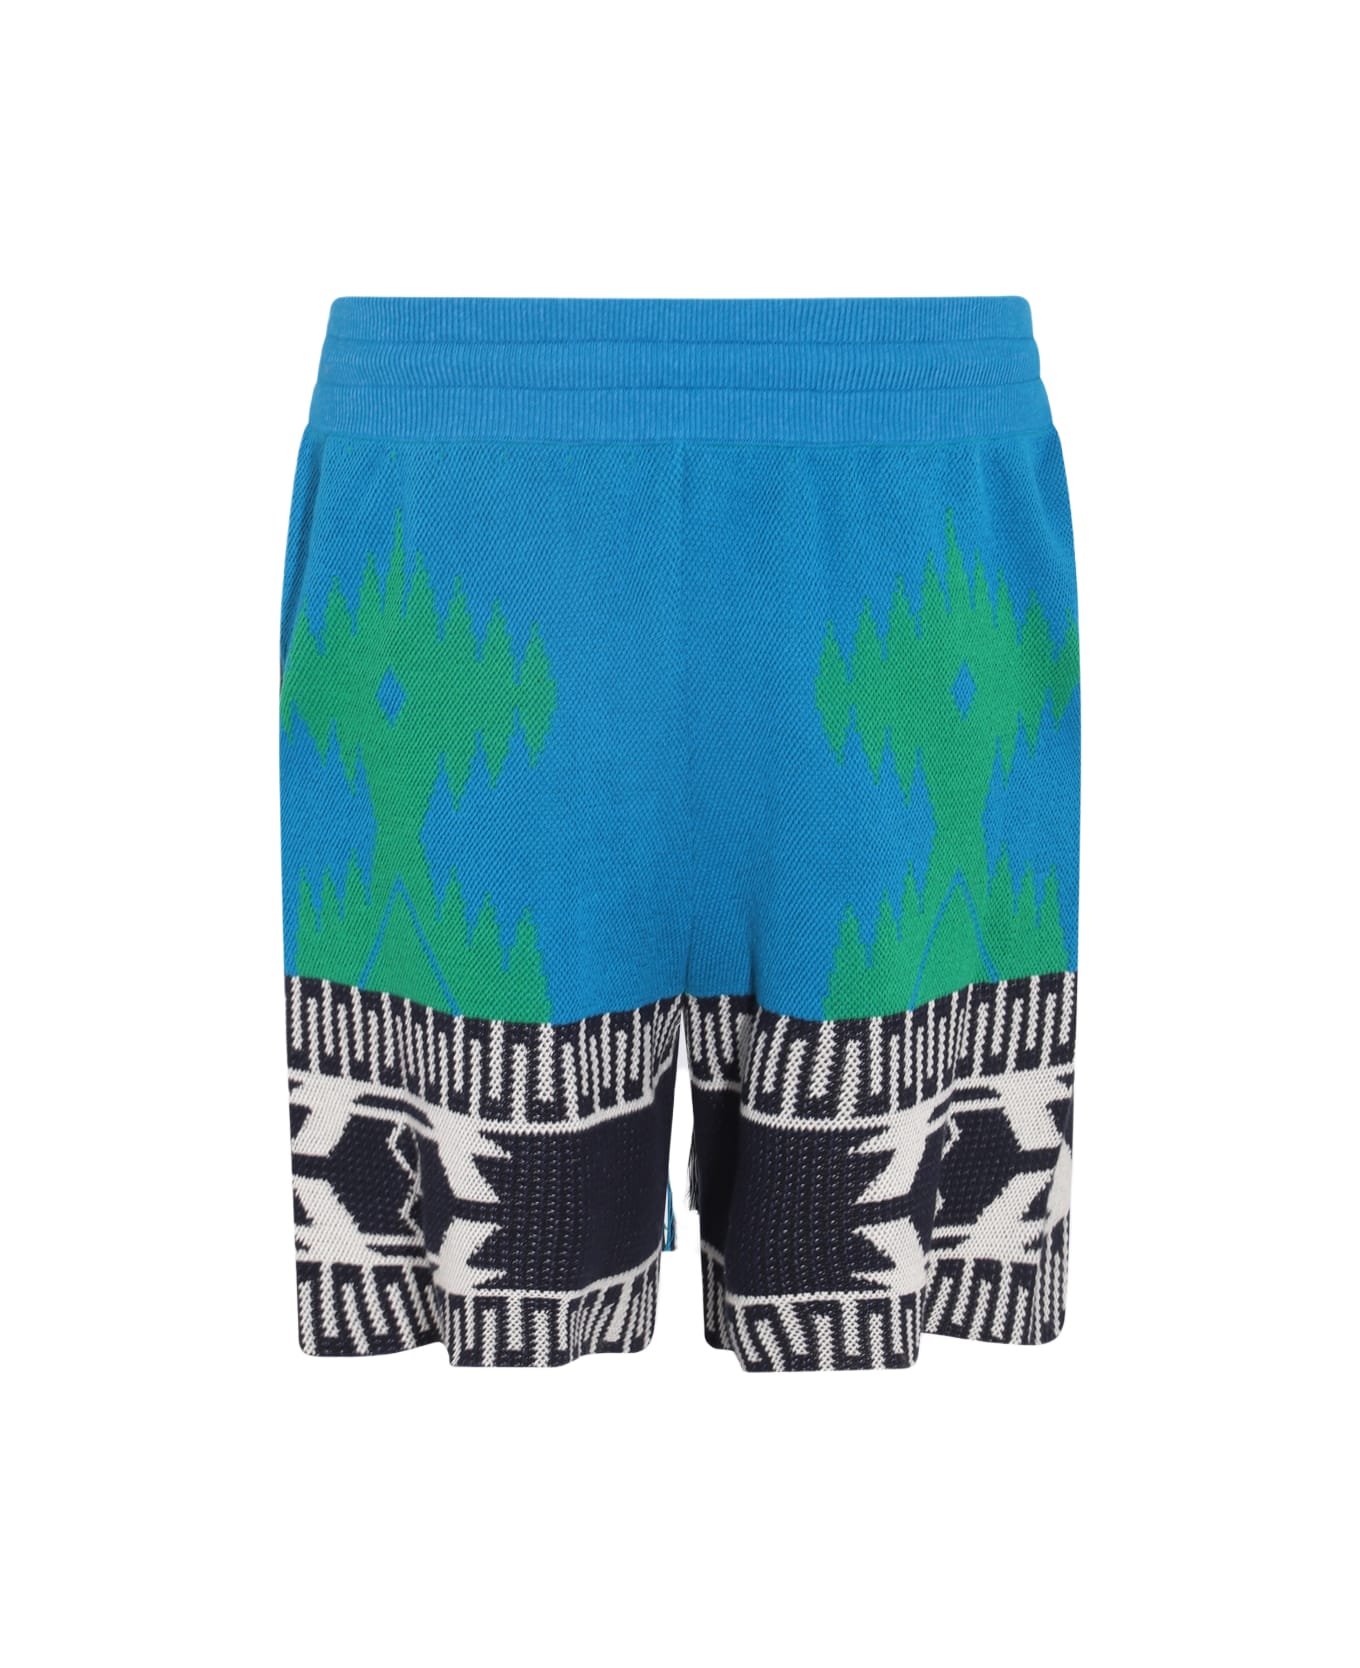 Alanui Blue Multicolour Cotton Blend Shorts - BLUE FOREST/GRE